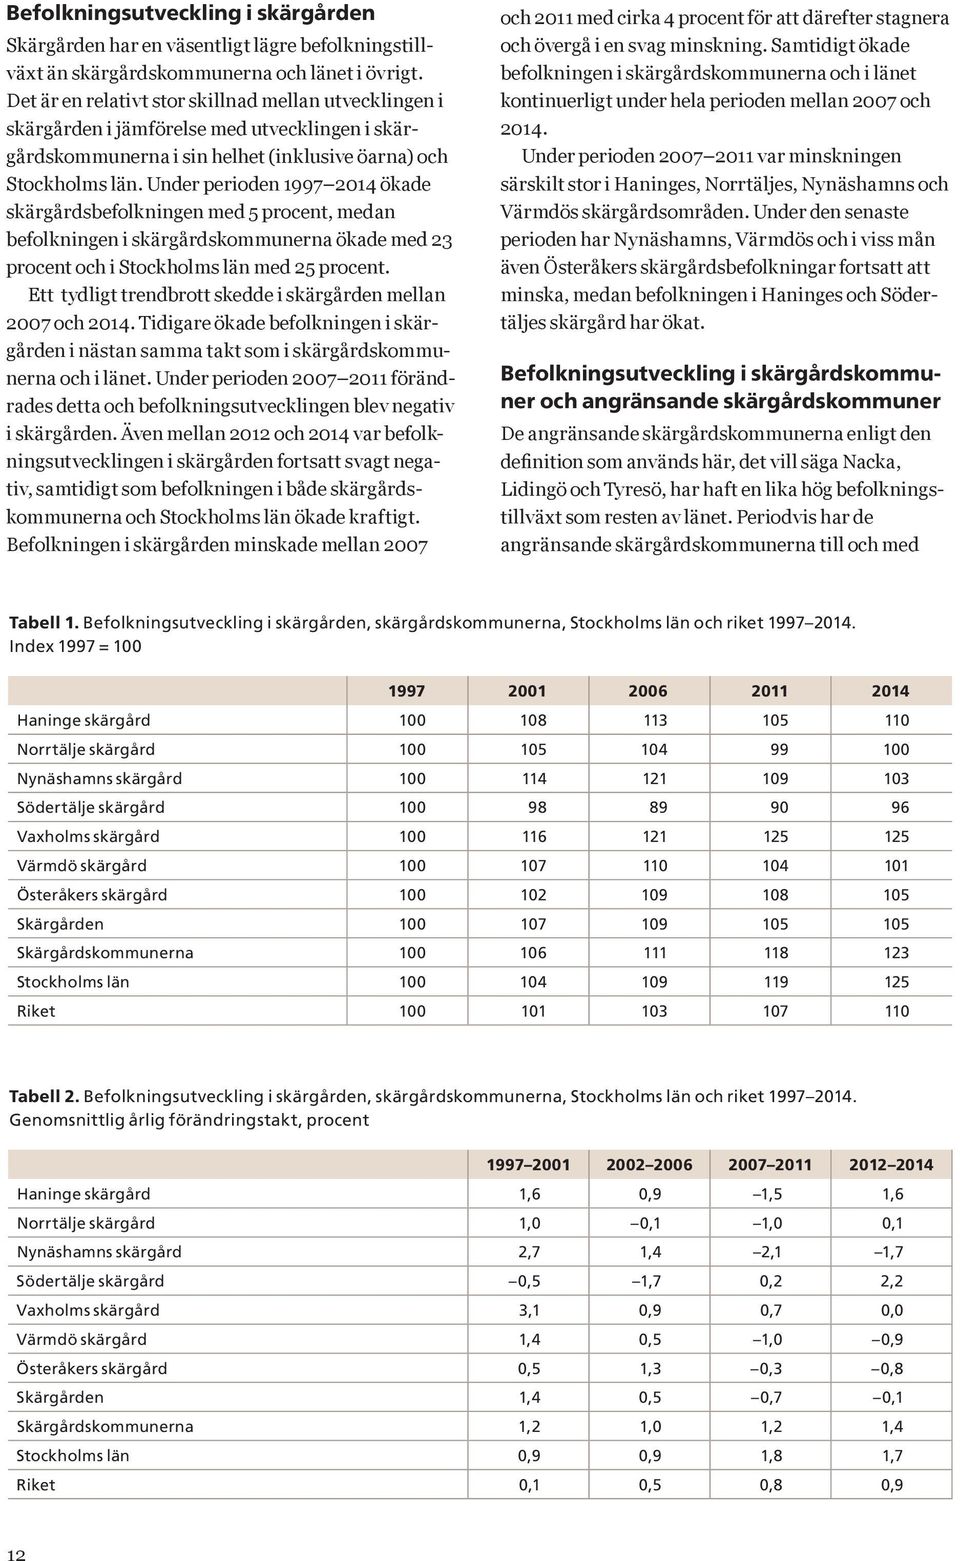 Under perioden 1997 2014 ökade skärgårdsbefolkningen med 5 procent, medan befolkningen i skärgårdskommunerna ökade med 23 procent och i Stockholms län med 25 procent.